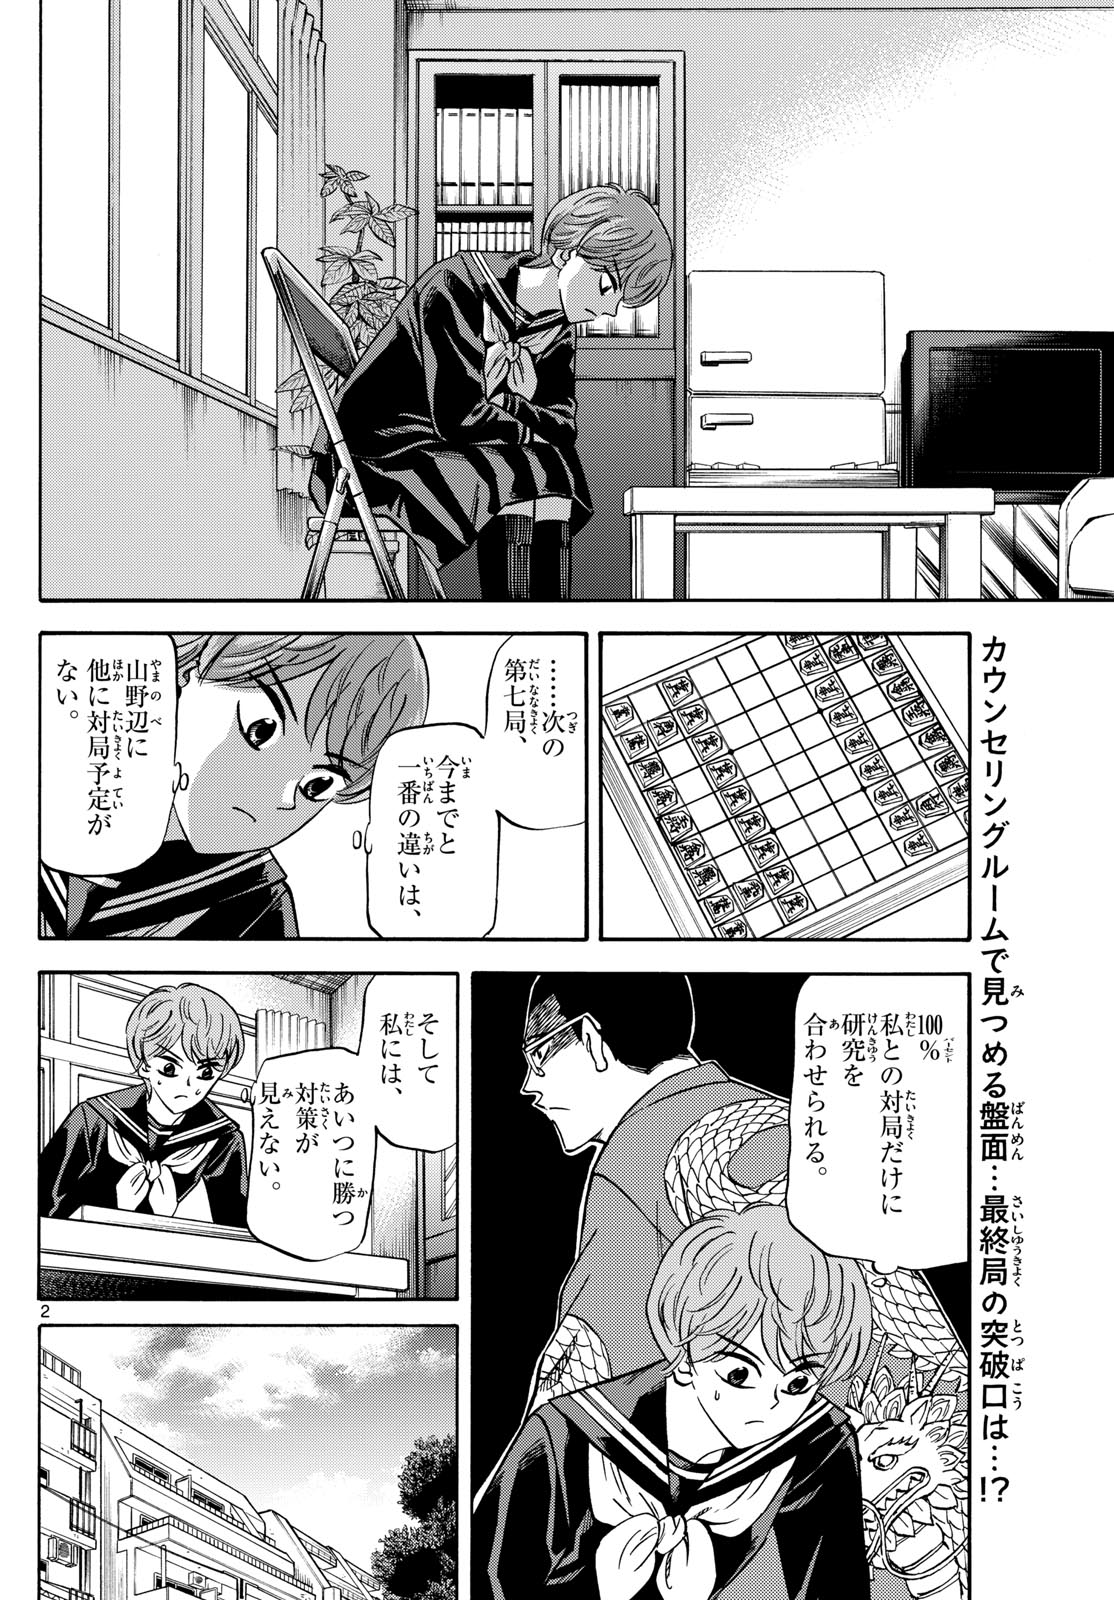 Tatsu to Ichigo - Chapter 172 - Page 2